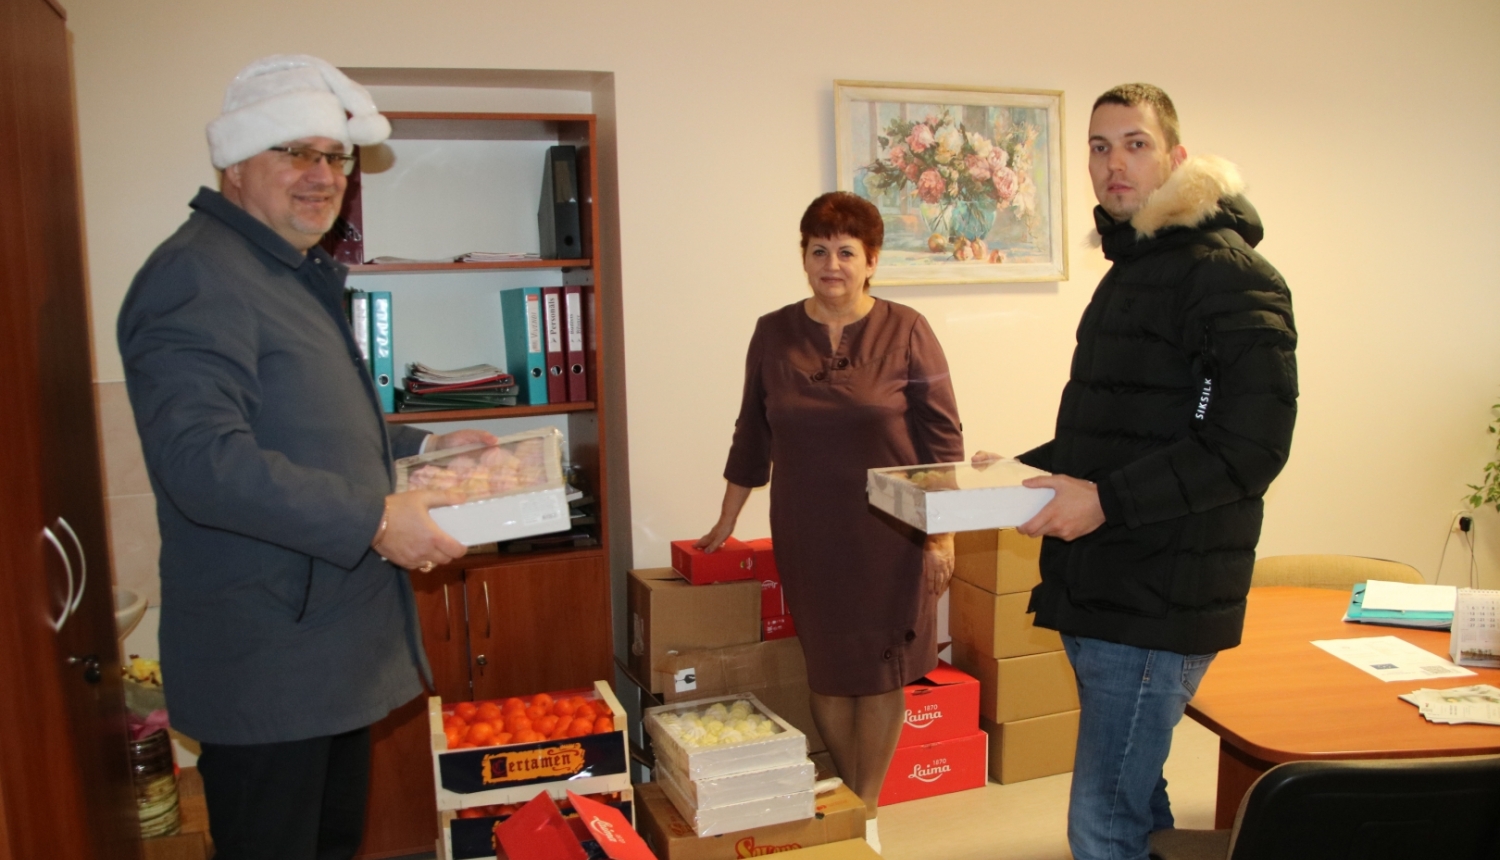 Biedrība “Atbalsts Valkai” ar uzņēmēju Andreju Pebo sagādājuši svētku sveicienu sociālā aprūpes centra “Valka” iemītniekiem